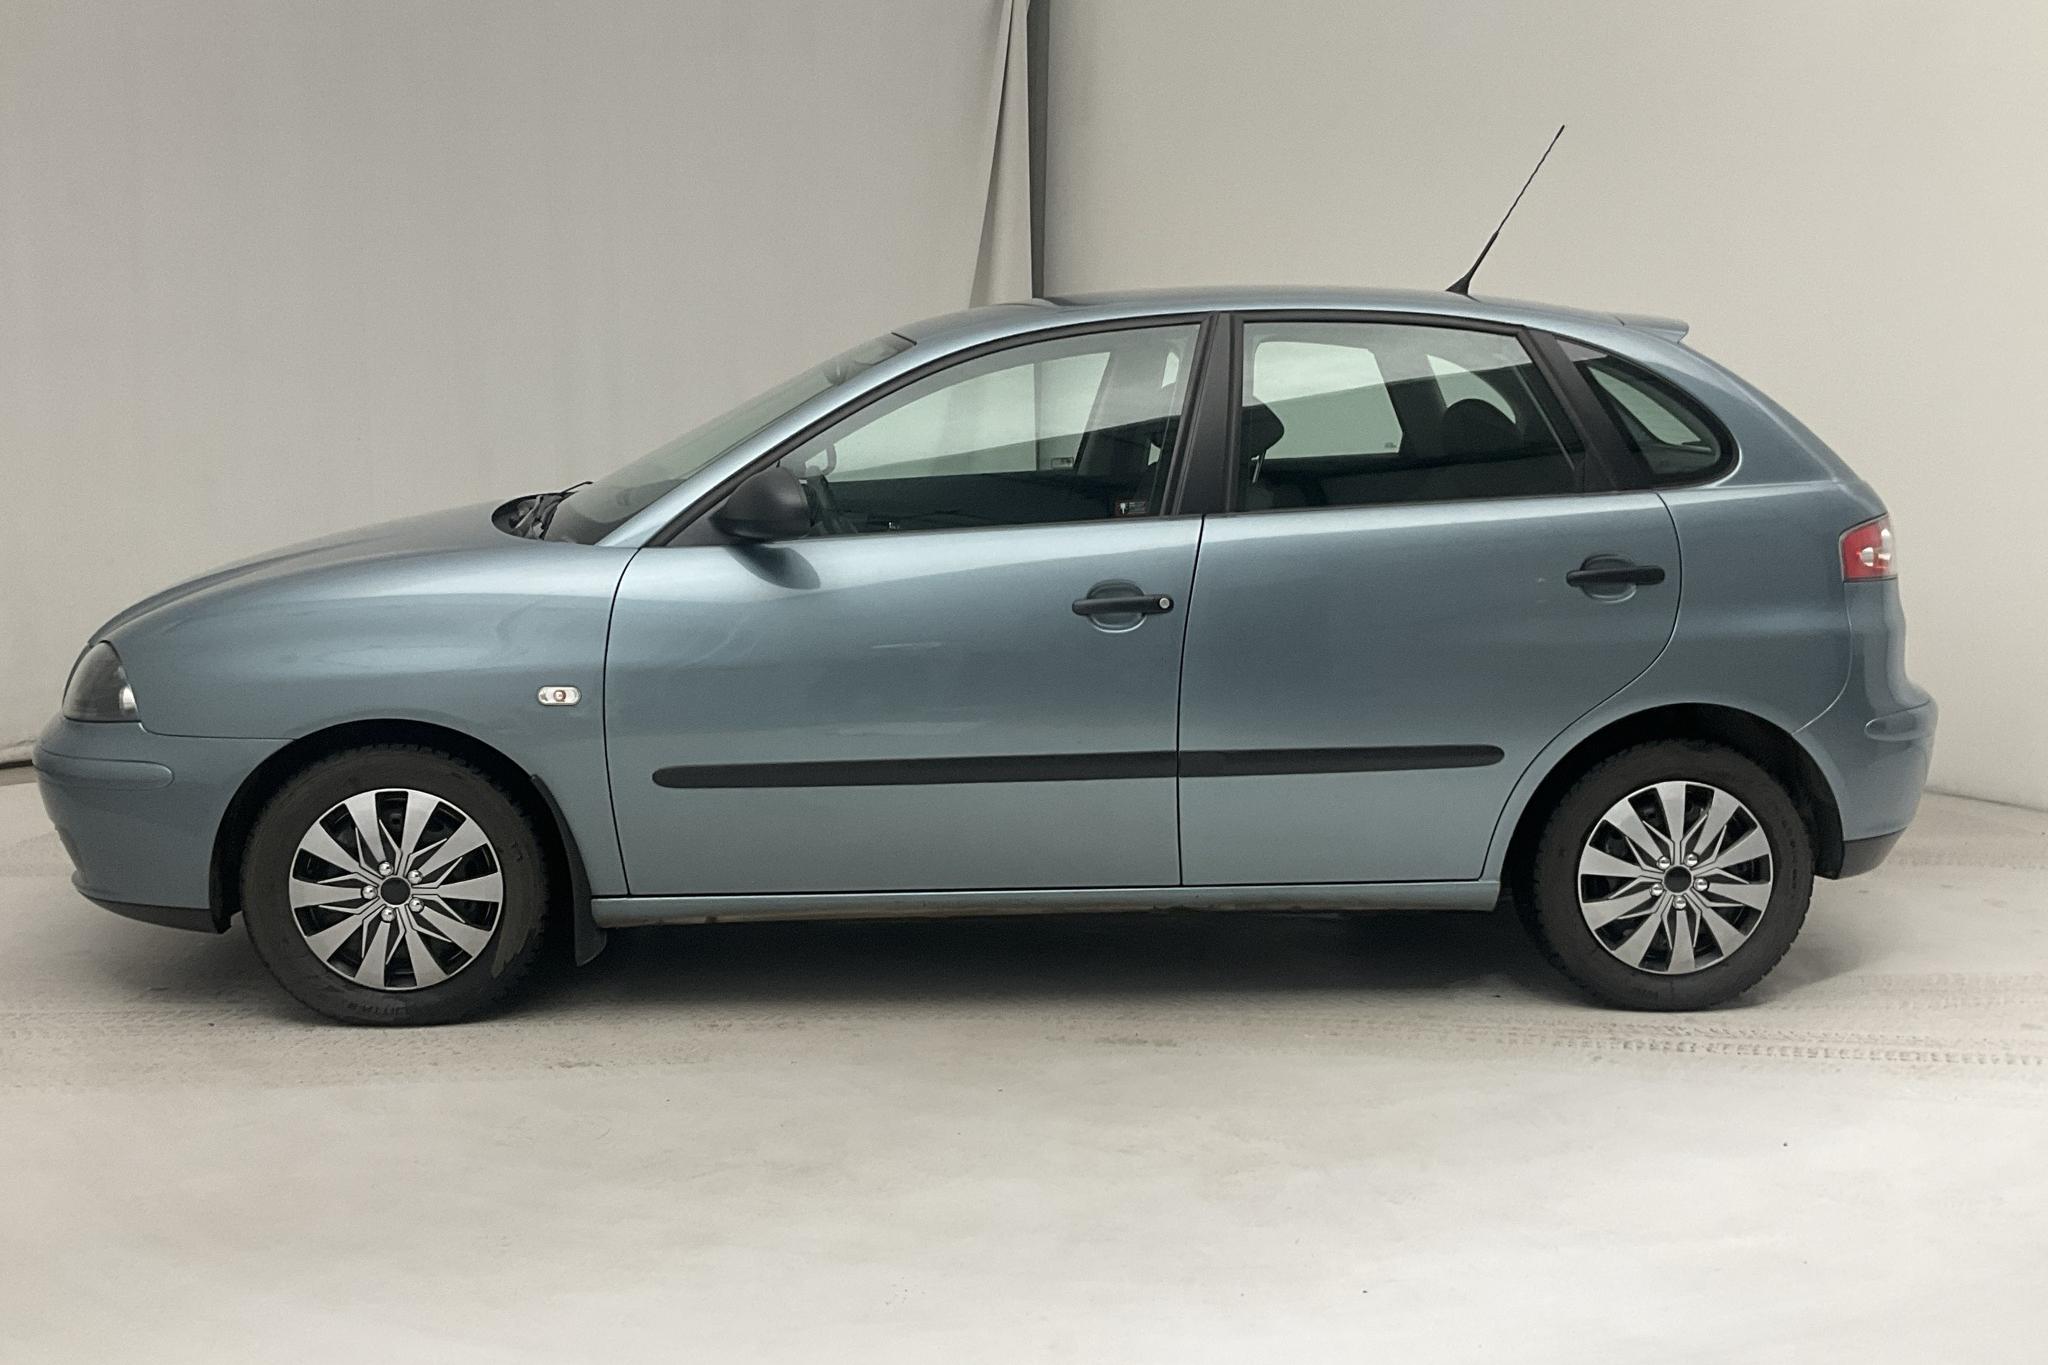 Seat Ibiza 1.4 16V 5dr (75hk) - 93 690 km - Automatic - Light Blue - 2006